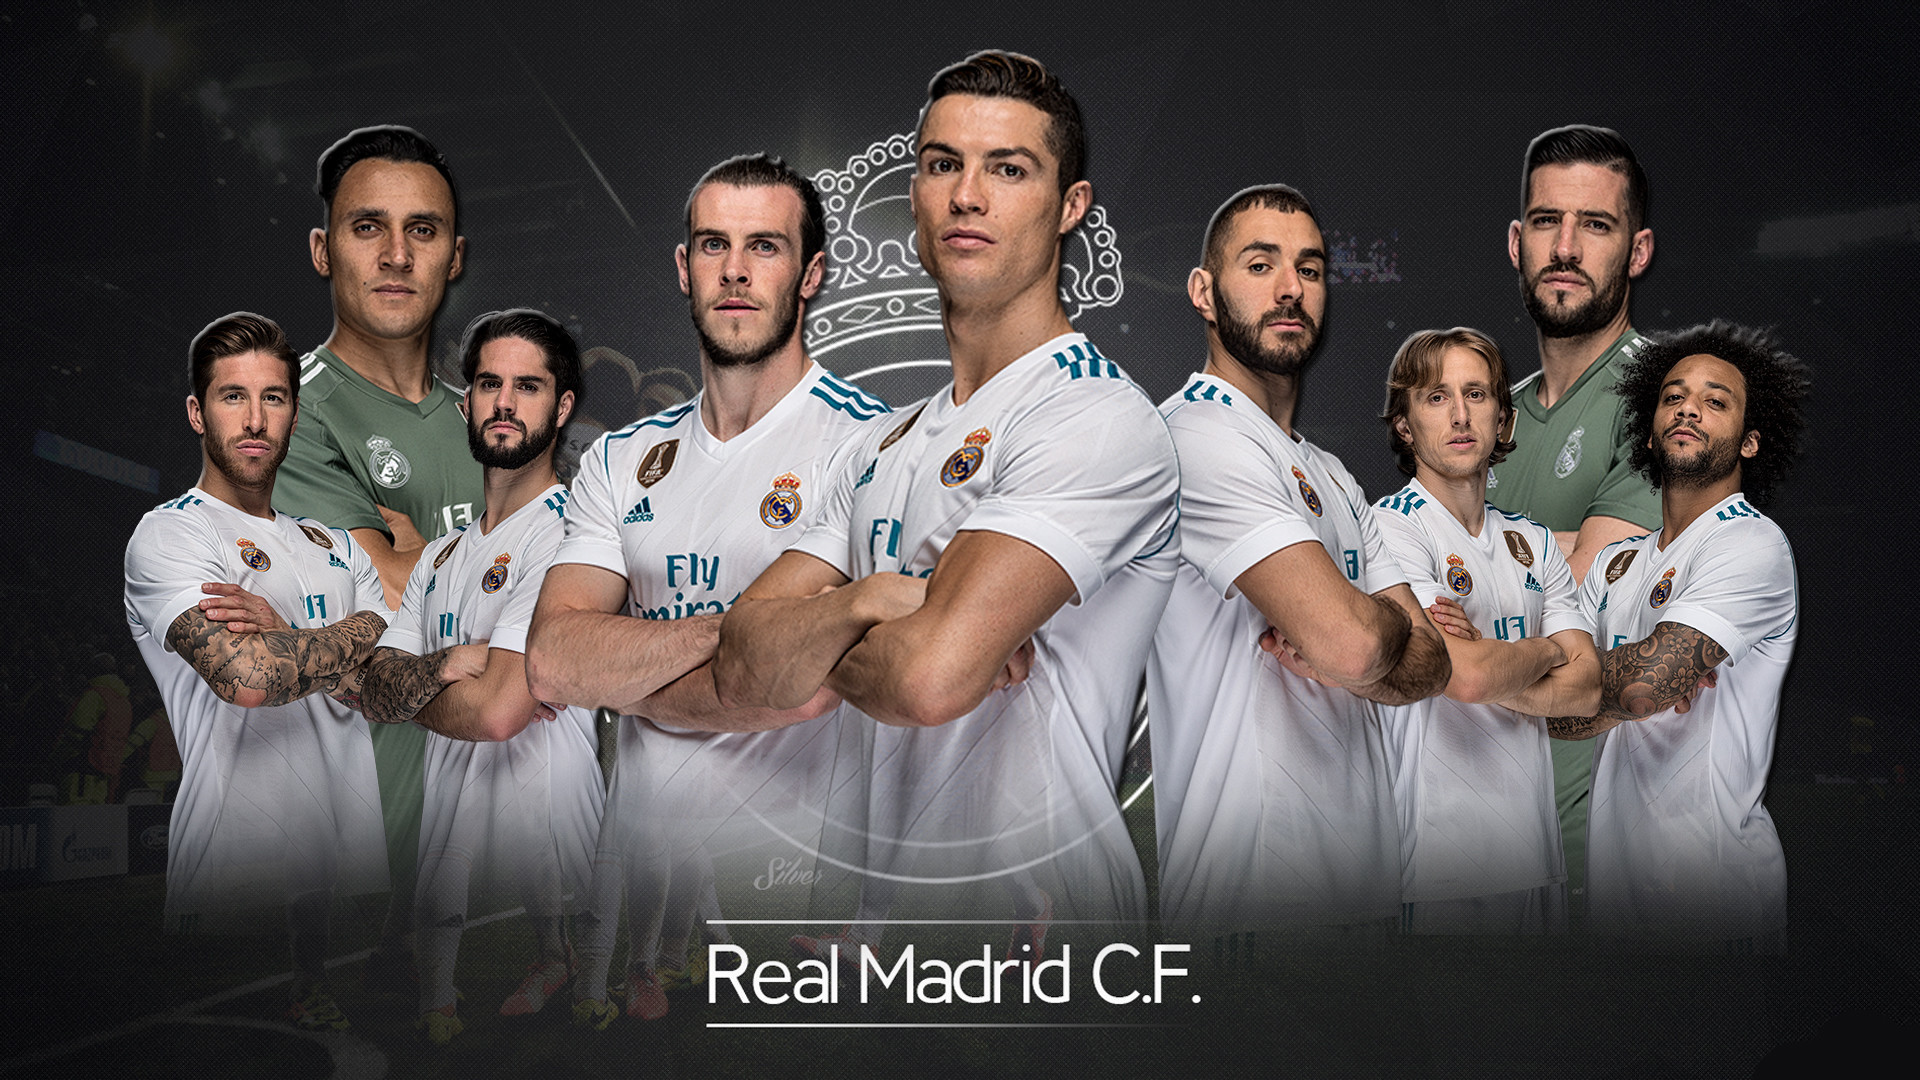 Real Madrid: Nếu là fan của CLB Real Madrid, bạn không thể bỏ qua cơ hội xem những hình ảnh đẹp mắt và ấn tượng về đội bóng này. Real Madrid là một trong những CLB lừng danh nhất thế giới, và nó sở hữu rất nhiều thành tích quan trọng.